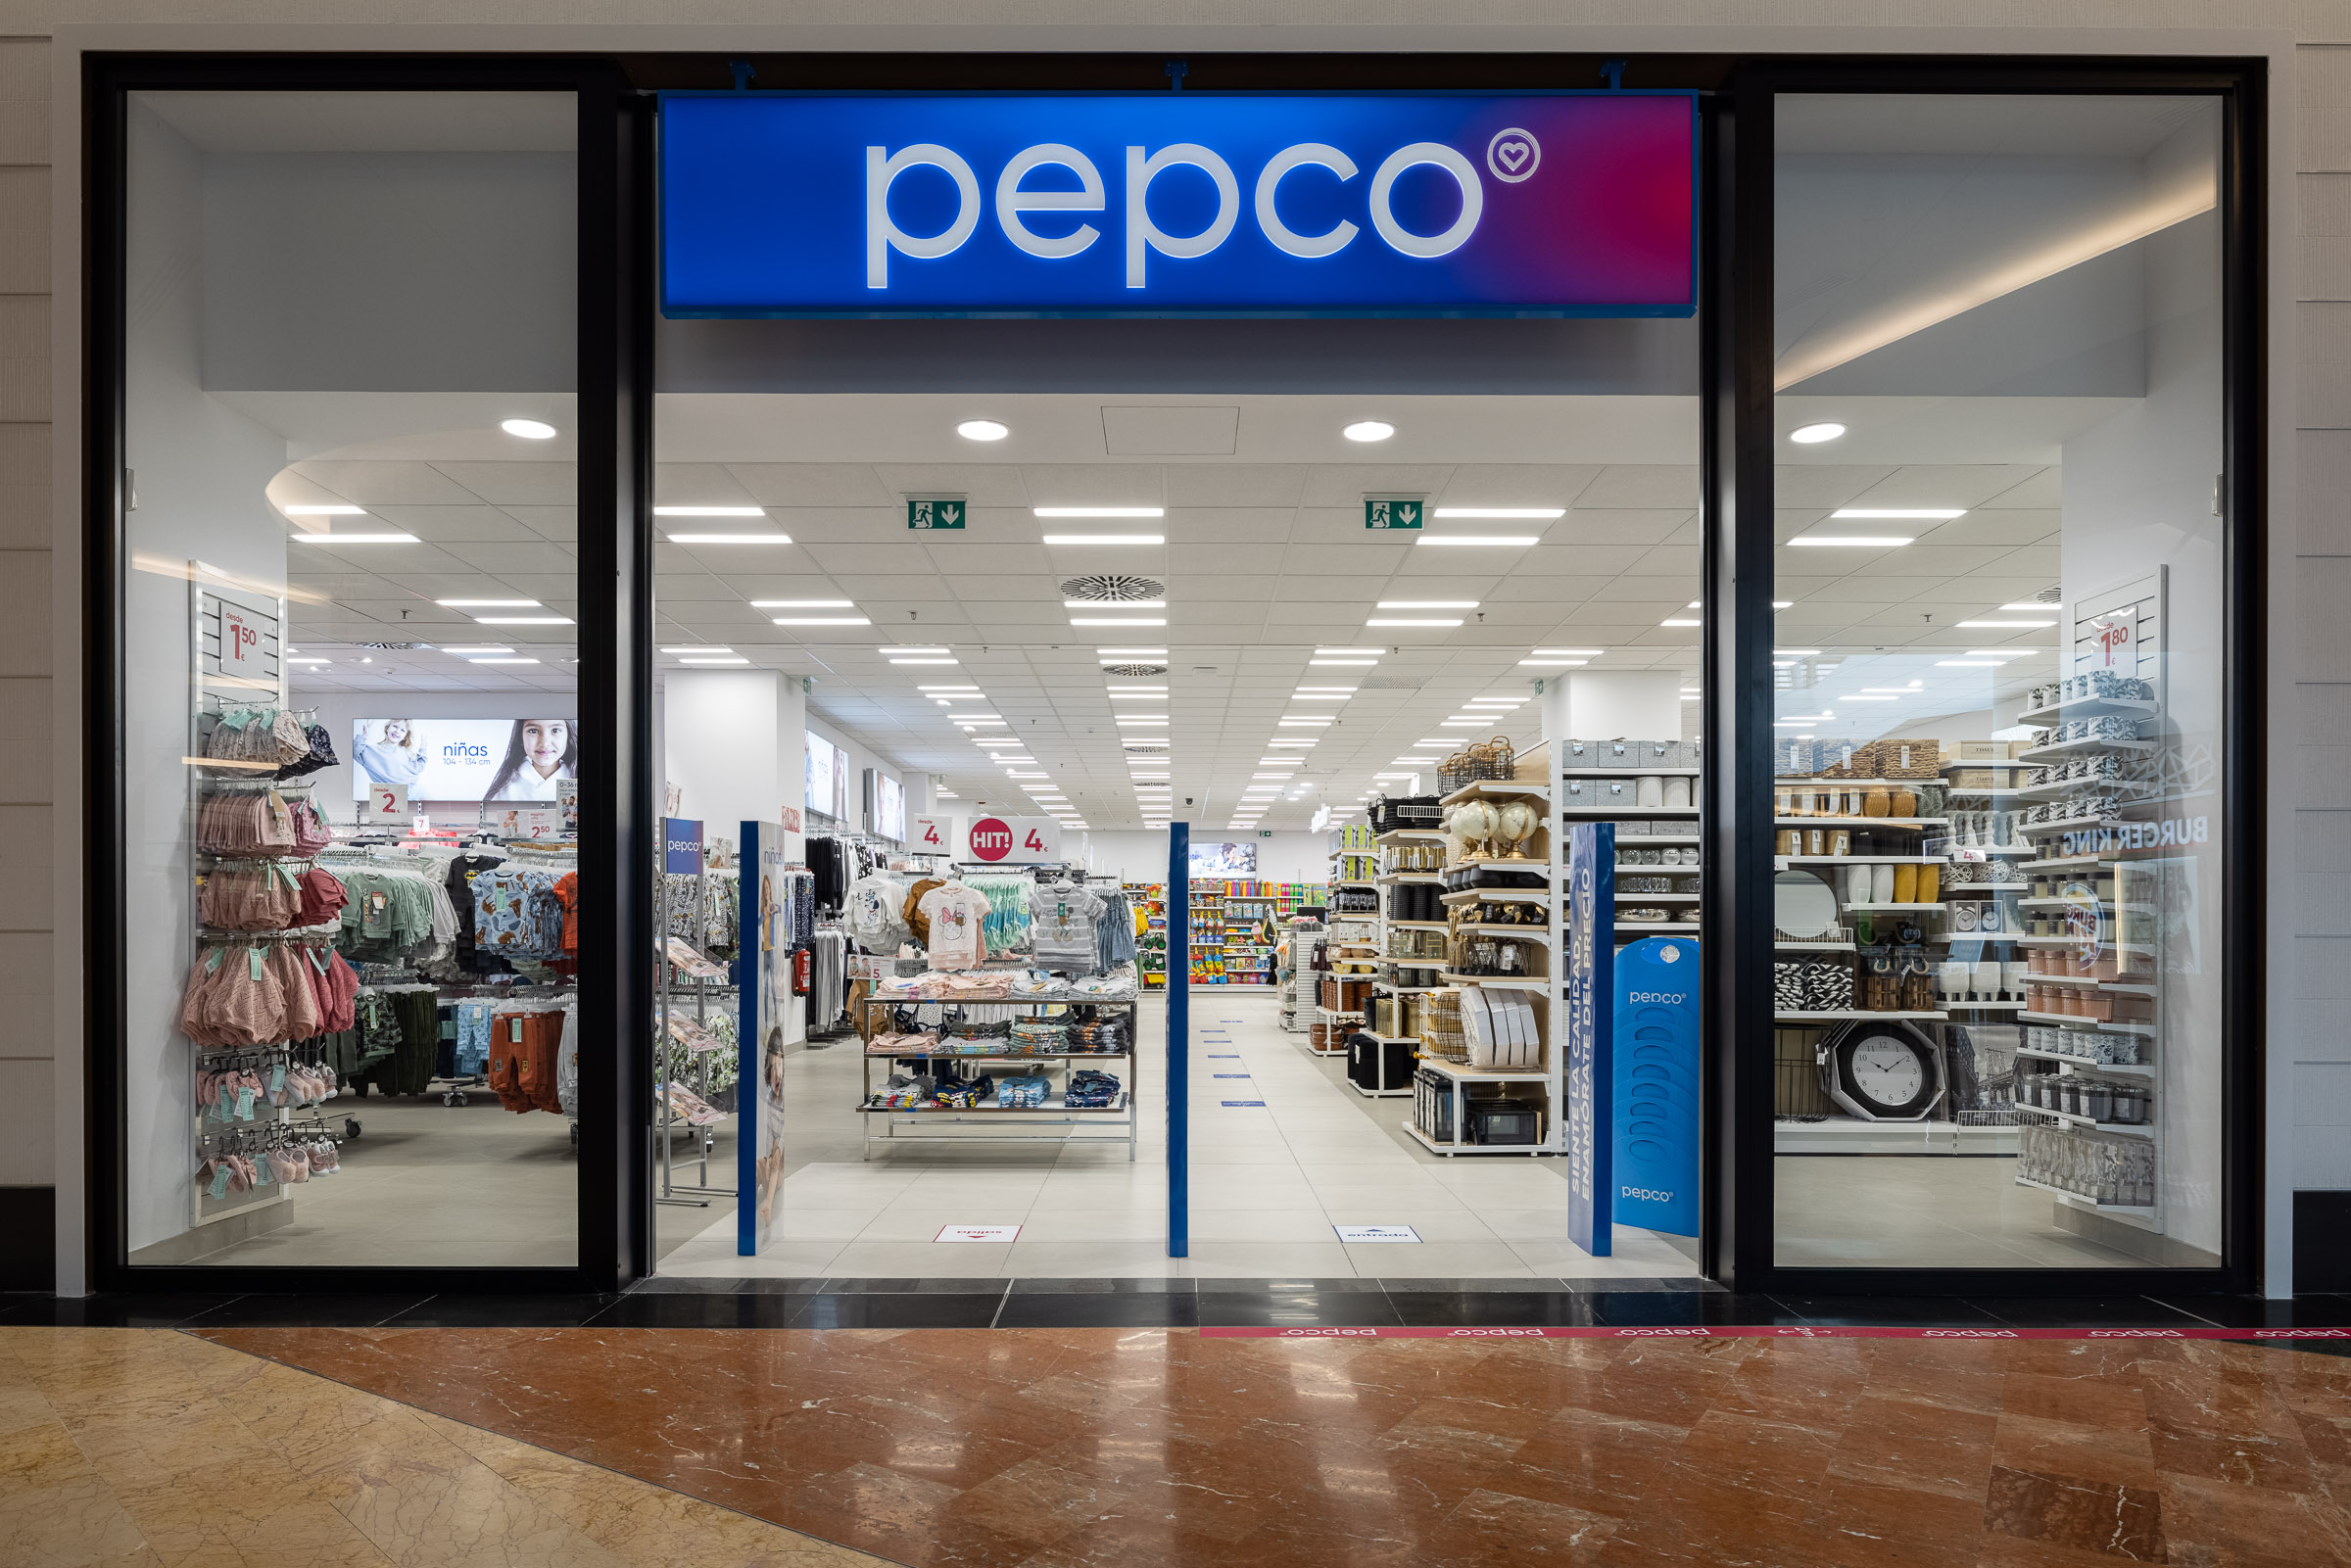 Así es Pepco, la tienda de moda low cost que viene a competir con Primark |  Business Insider España